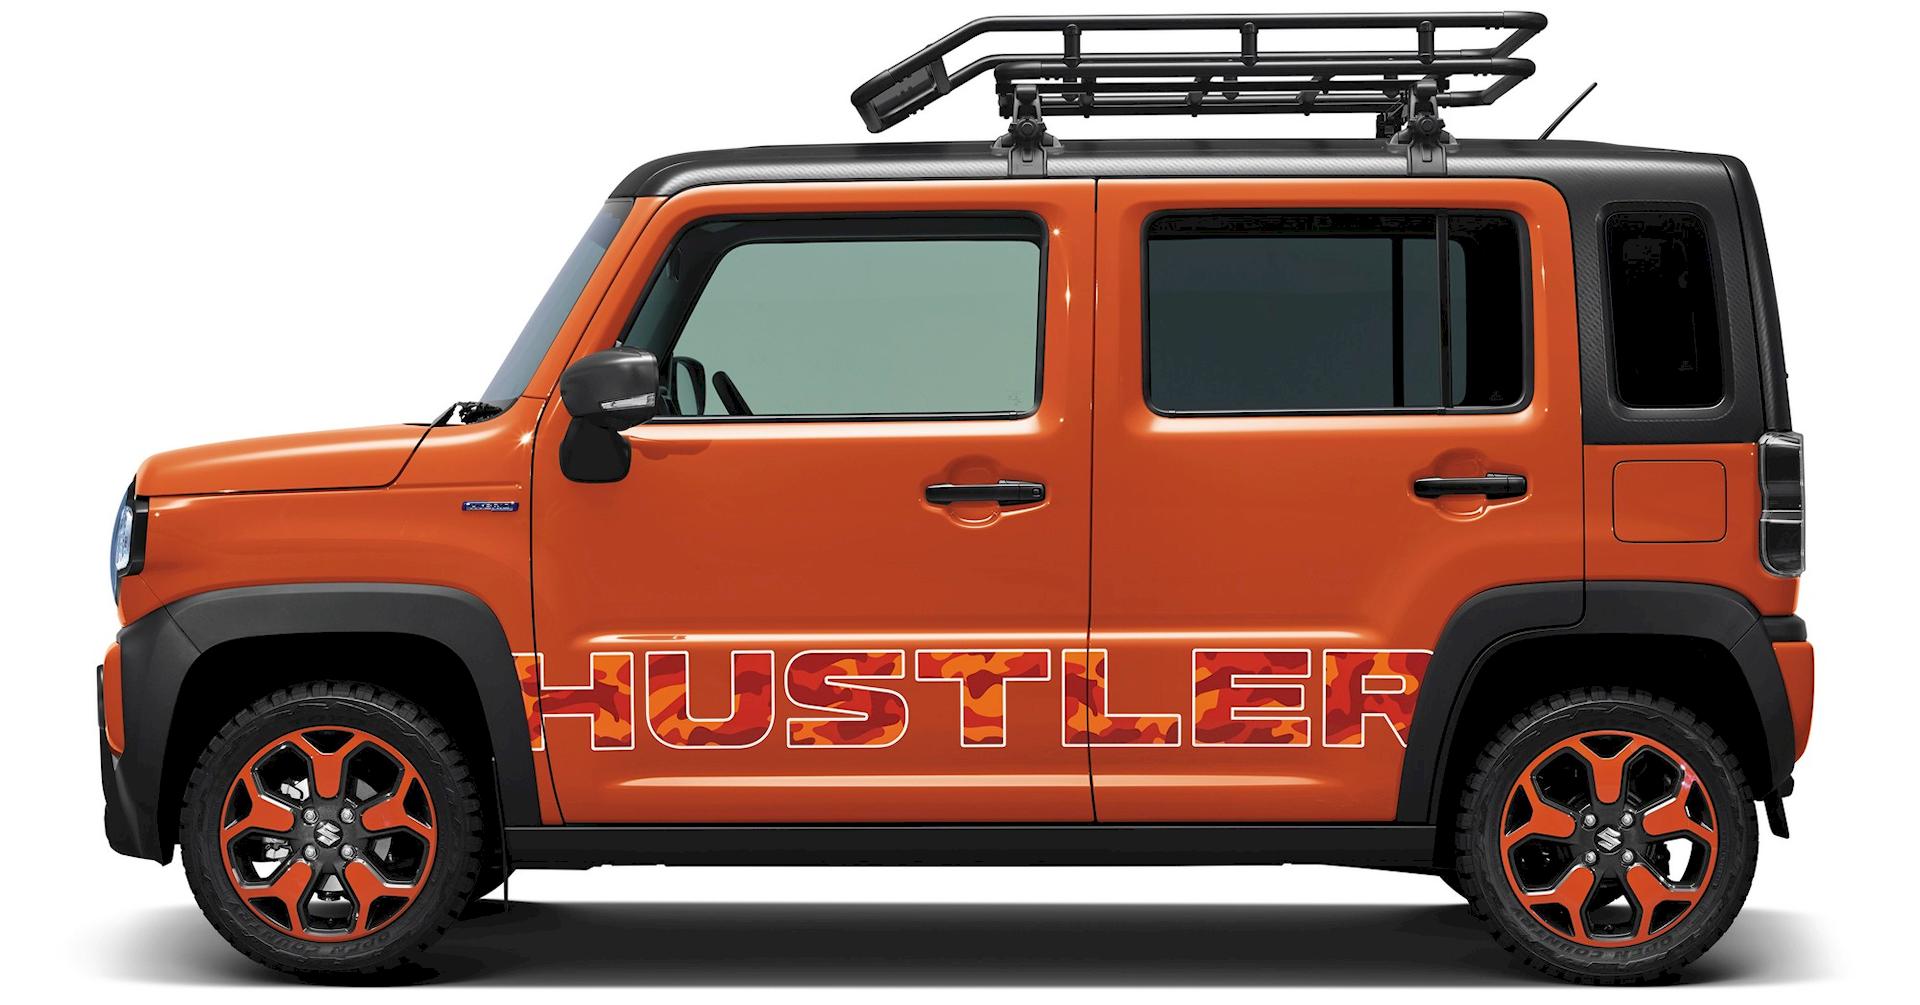 Suzuki hustler2